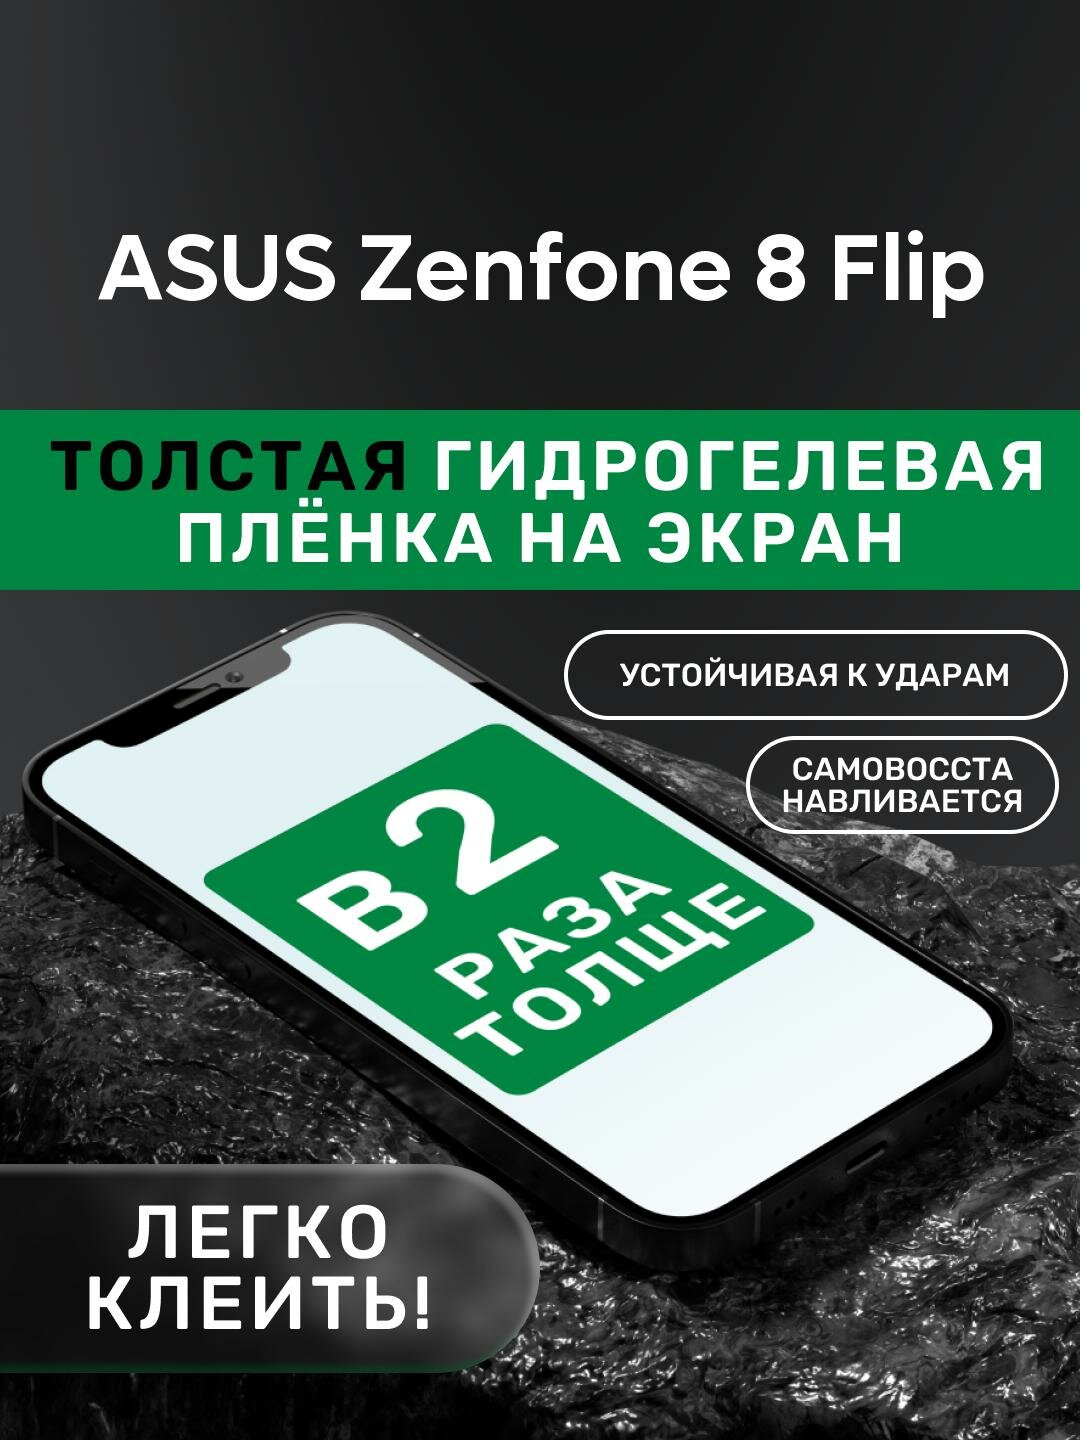 Гидрогелевая утолщённая защитная плёнка на экран для ASUS Zenfone 8 Flip